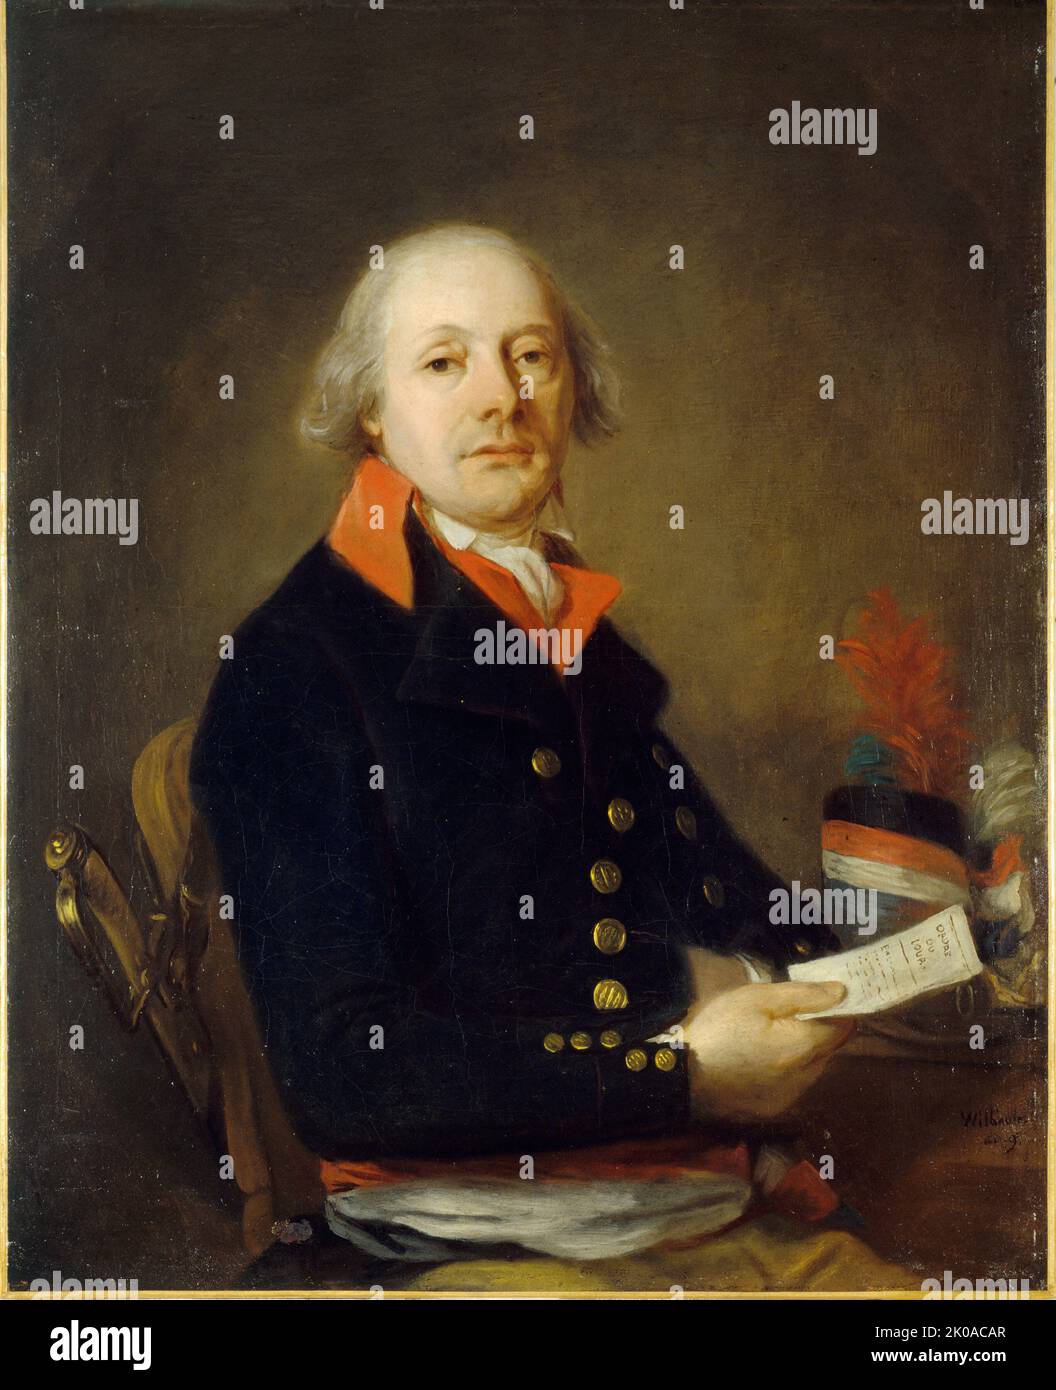 Porträt des kriegskommissars im IX. Jahr, vermutlich Pascali, 1802. Stockfoto